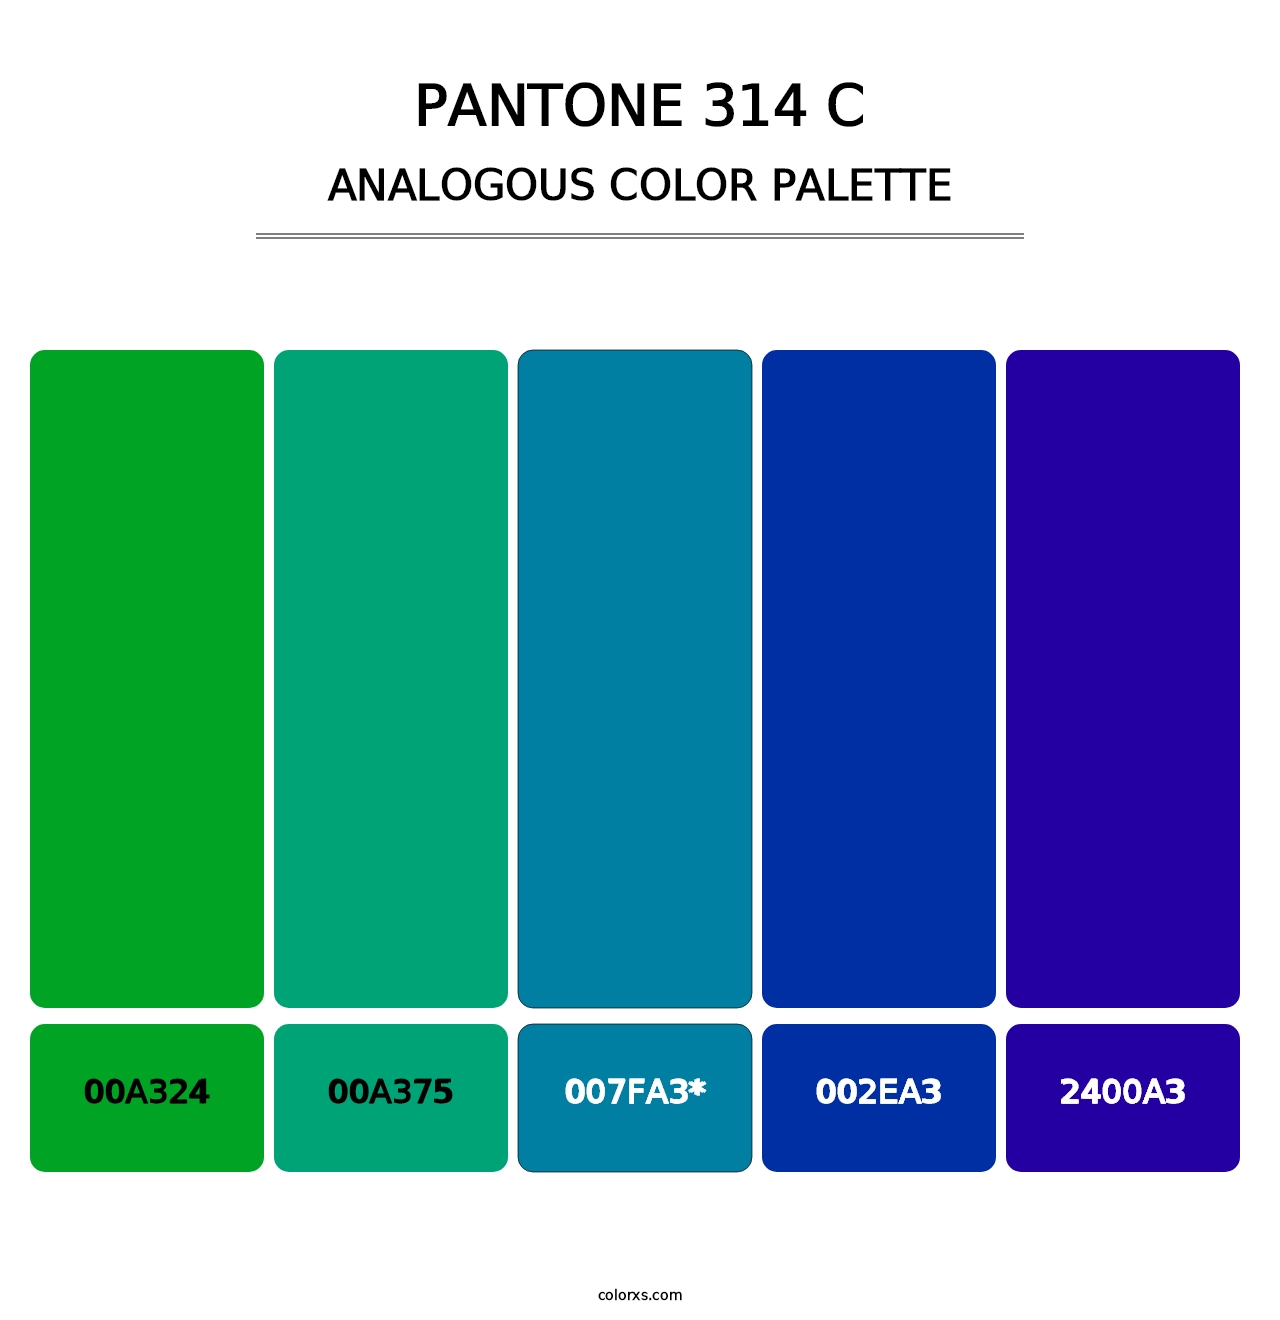 PANTONE 314 C - Analogous Color Palette